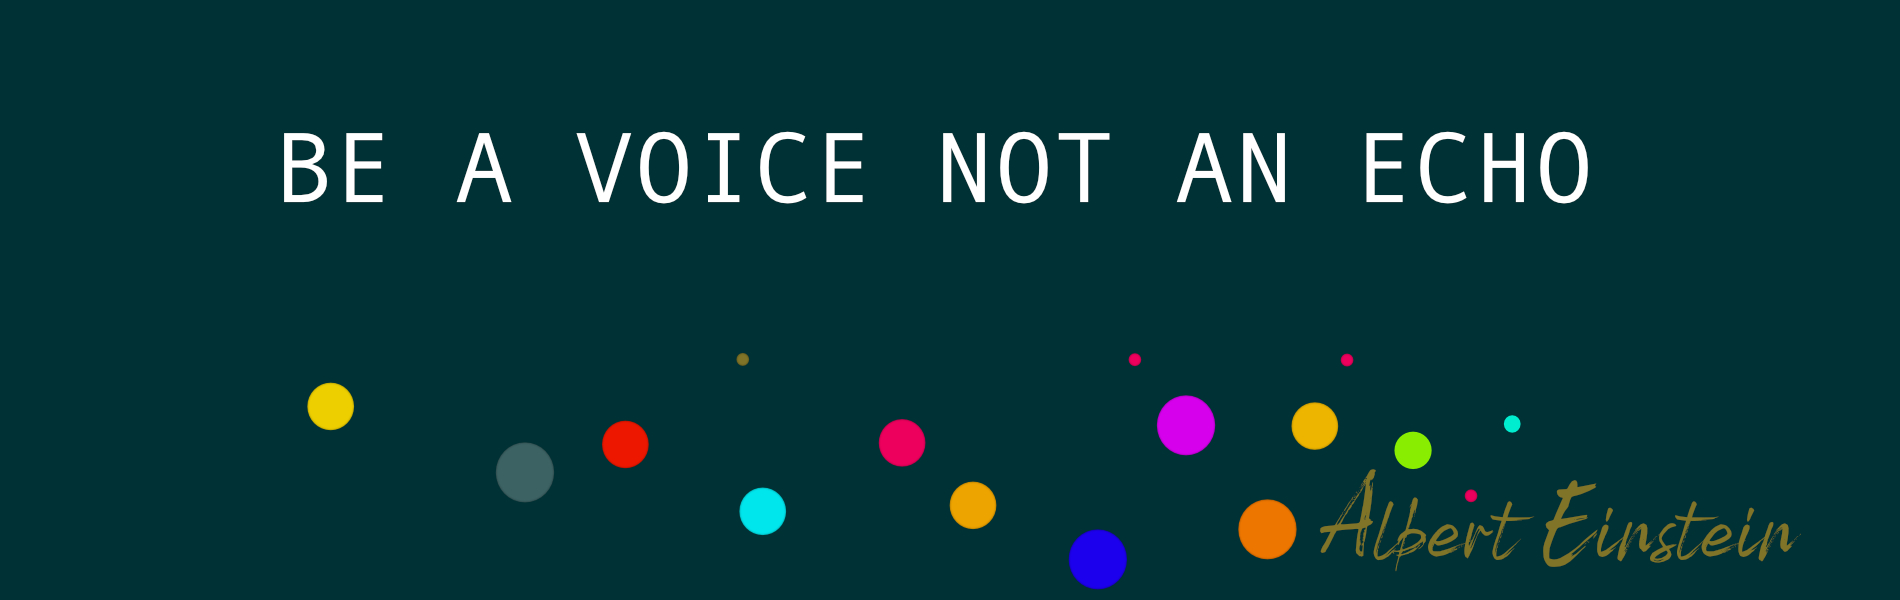 Be an voice not an echo